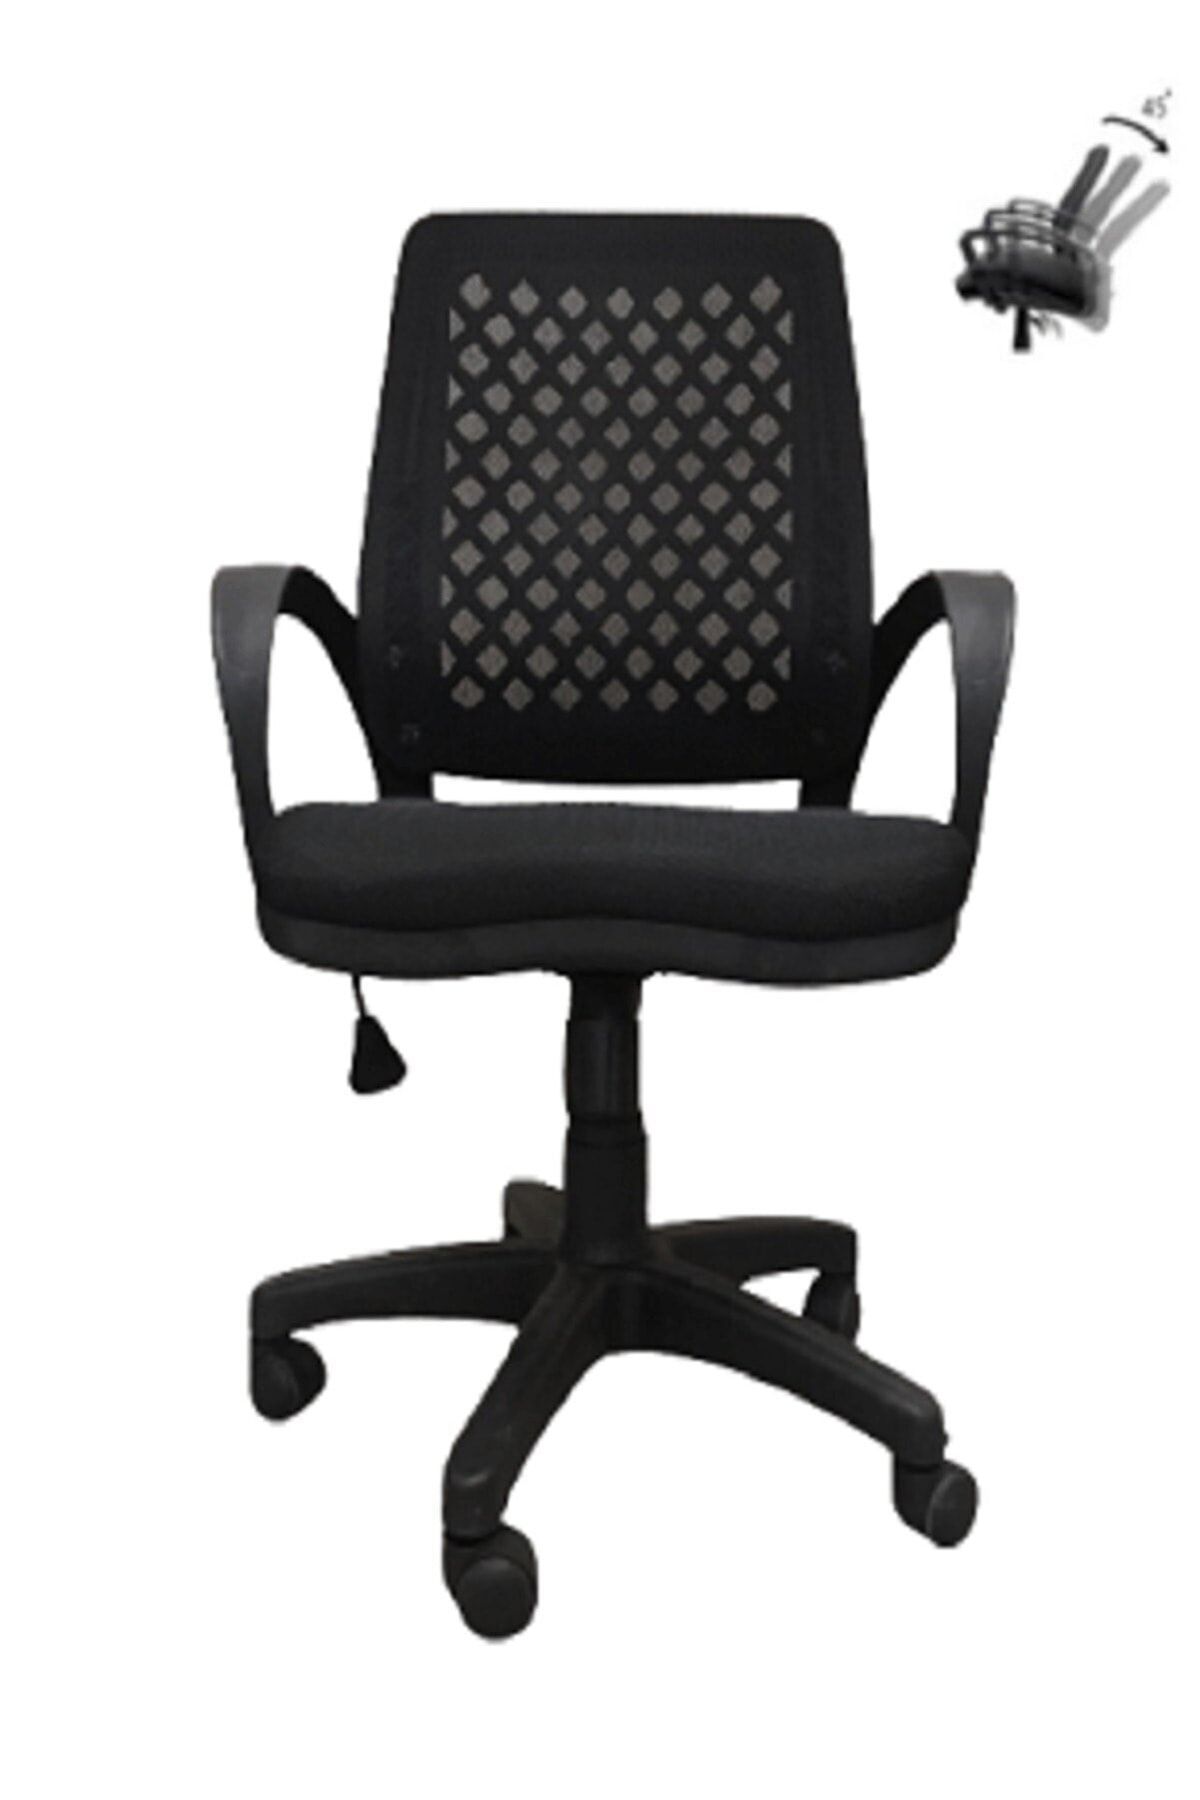 CLK Fileli Petek Ofis Büro Bilgisayar Koltuğu Sandalyesi Siyah